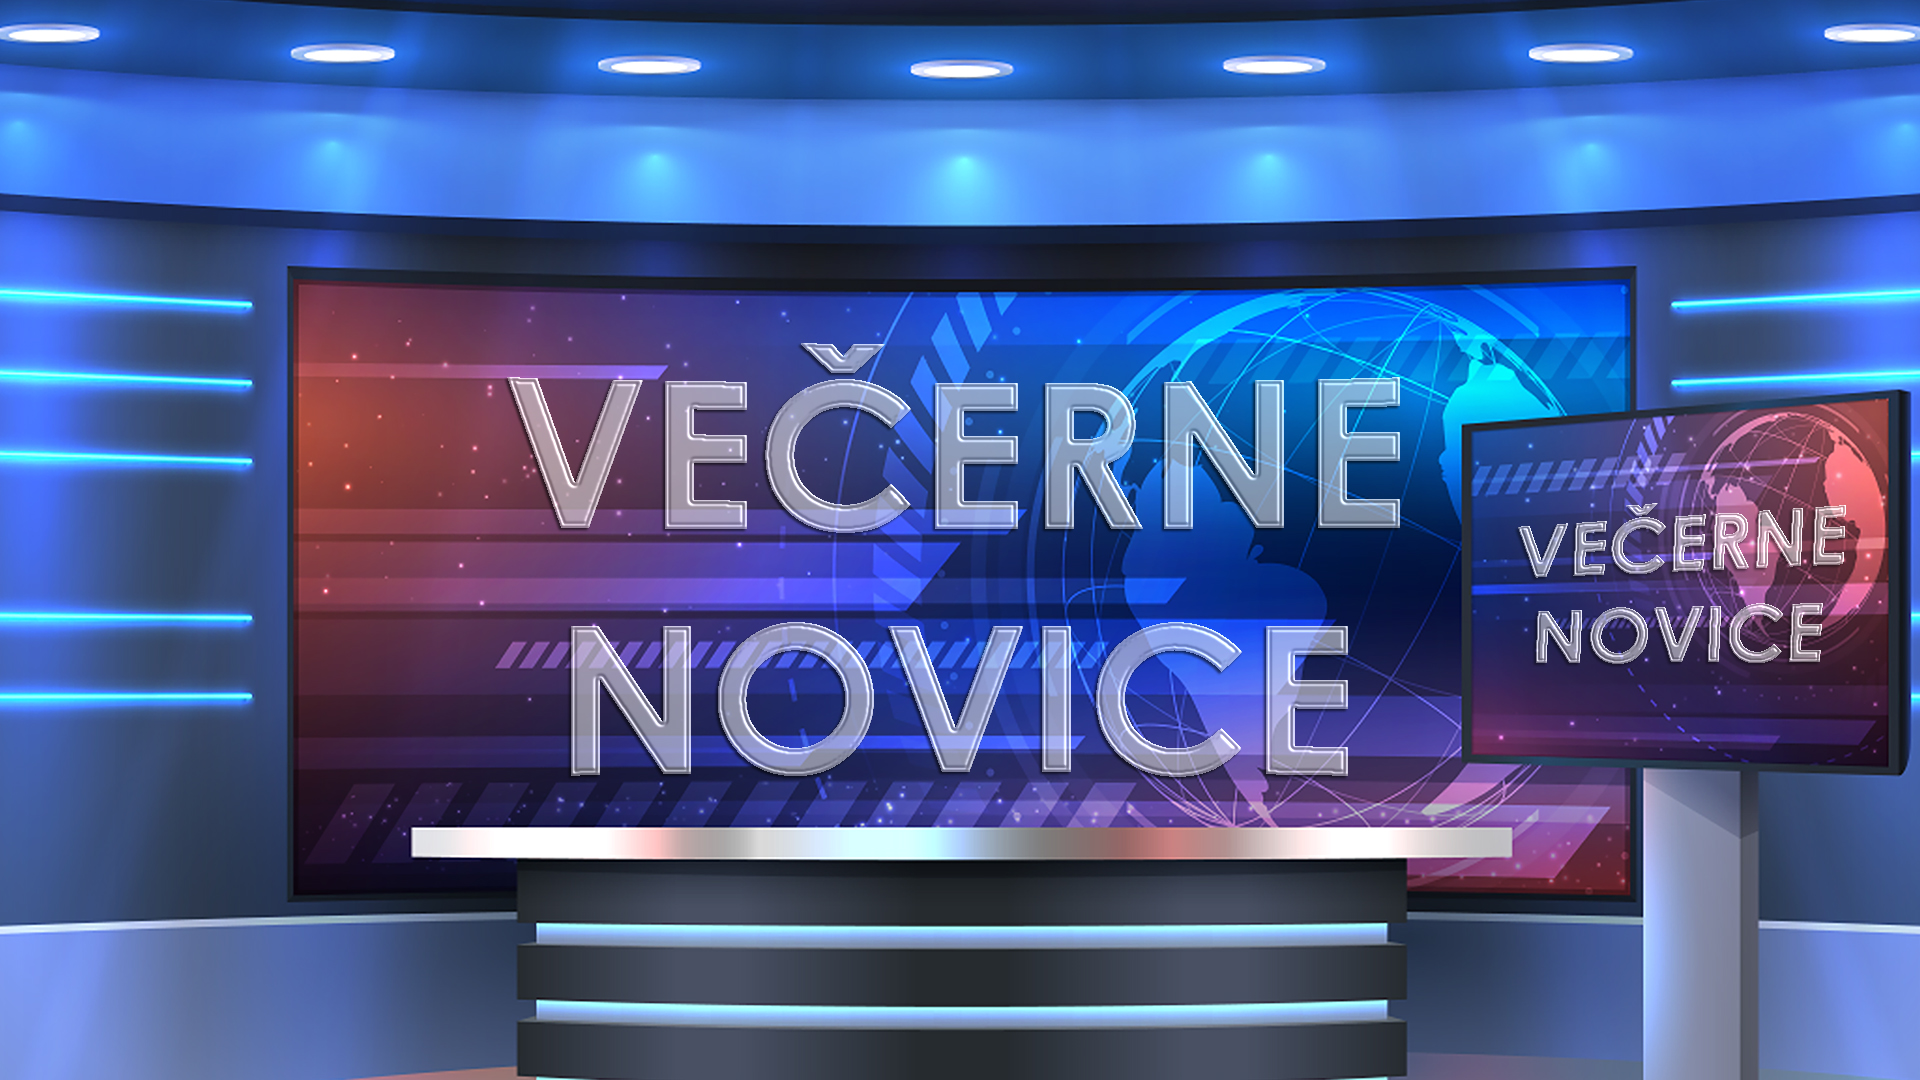 VEČERNE NOVICE new2 | Nova24TV